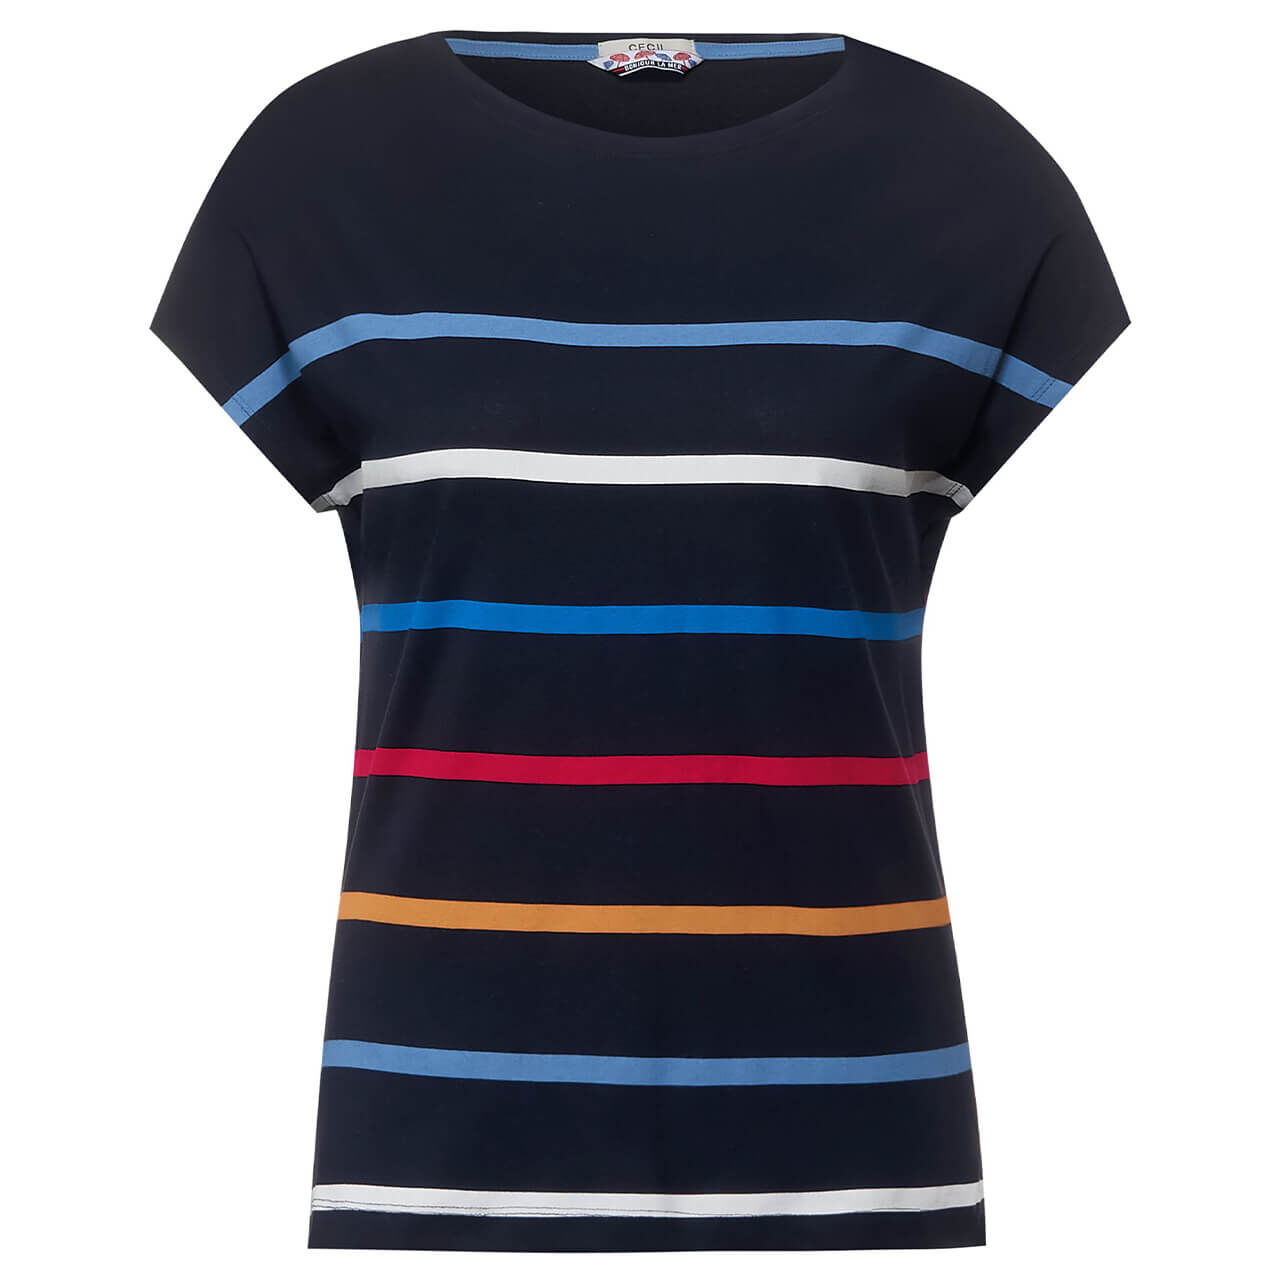 Cecil Multicolor Stripe T-Shirt für Damen in Dunkelblau gestreift, FarbNr.: 30128